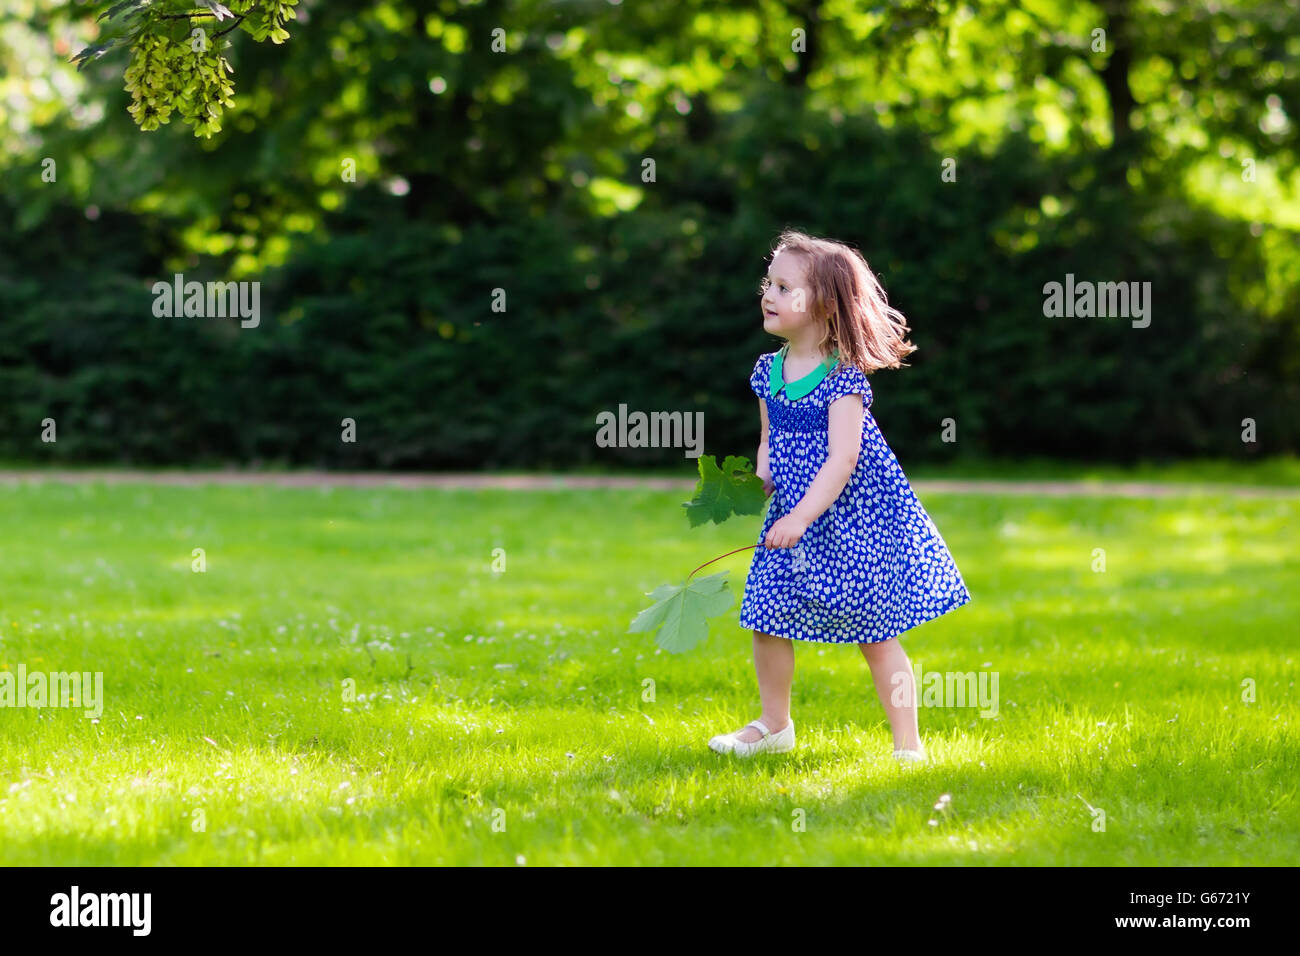 Niedliche kleine Mädchen spielen im sonnigen Sommerpark. Kind, die Kommissionierung Ahorn Blätter. Kleinkind Kind laufen und springen in einen Wald. Stockfoto